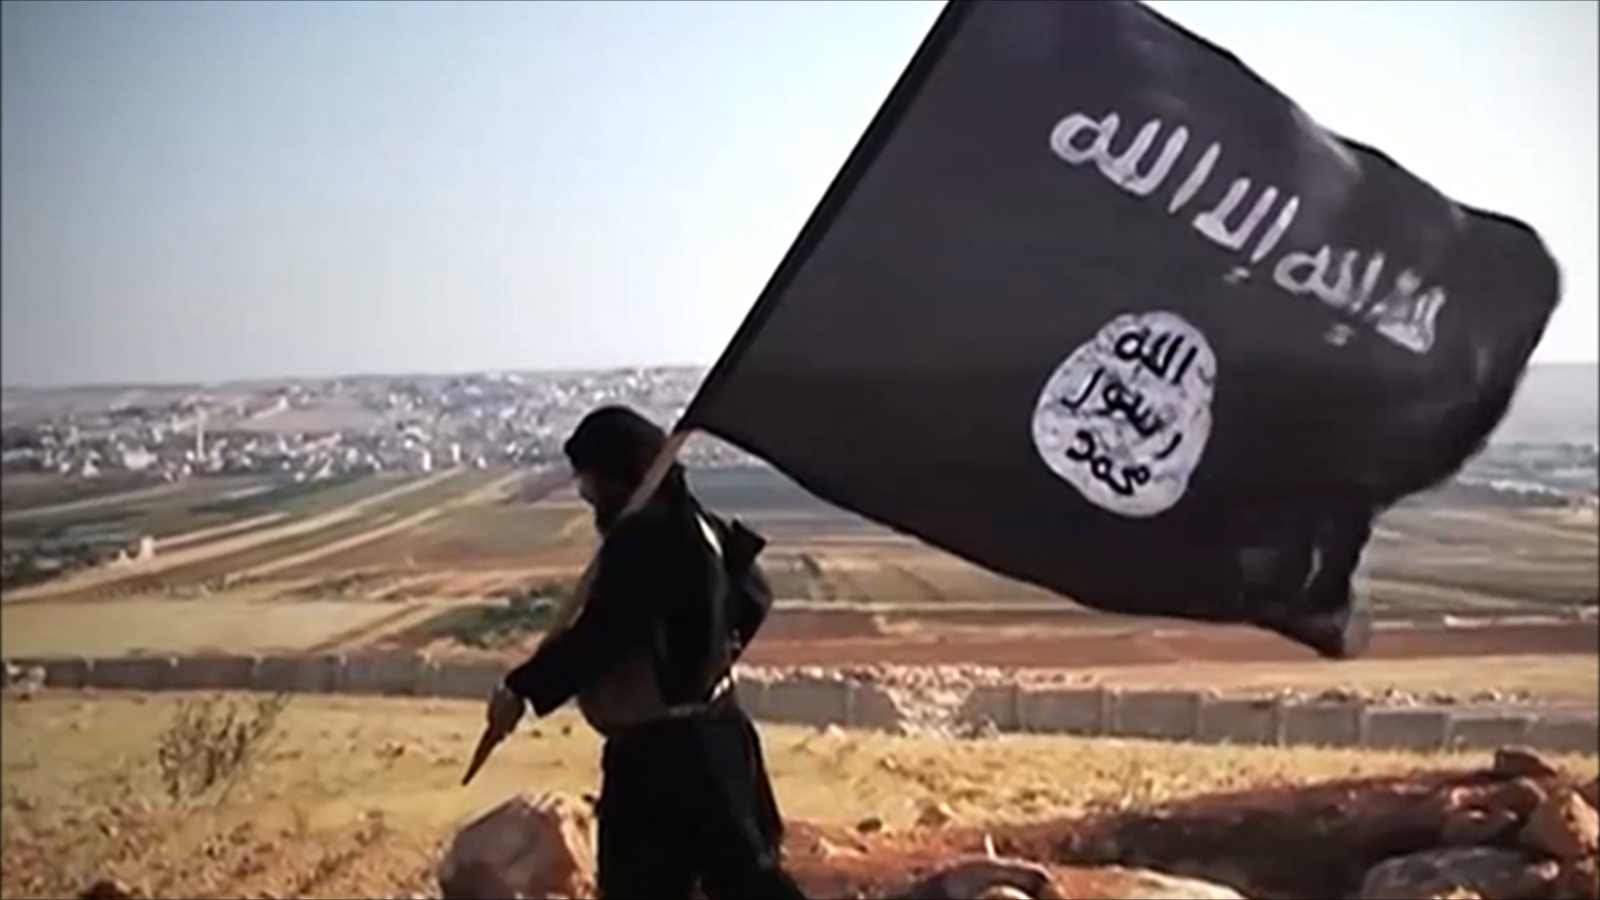   فيديو| «جند الإسلام» تنظيم تكفيري مسلح يشعل الصراع بين «داعش» و«القاعدة»